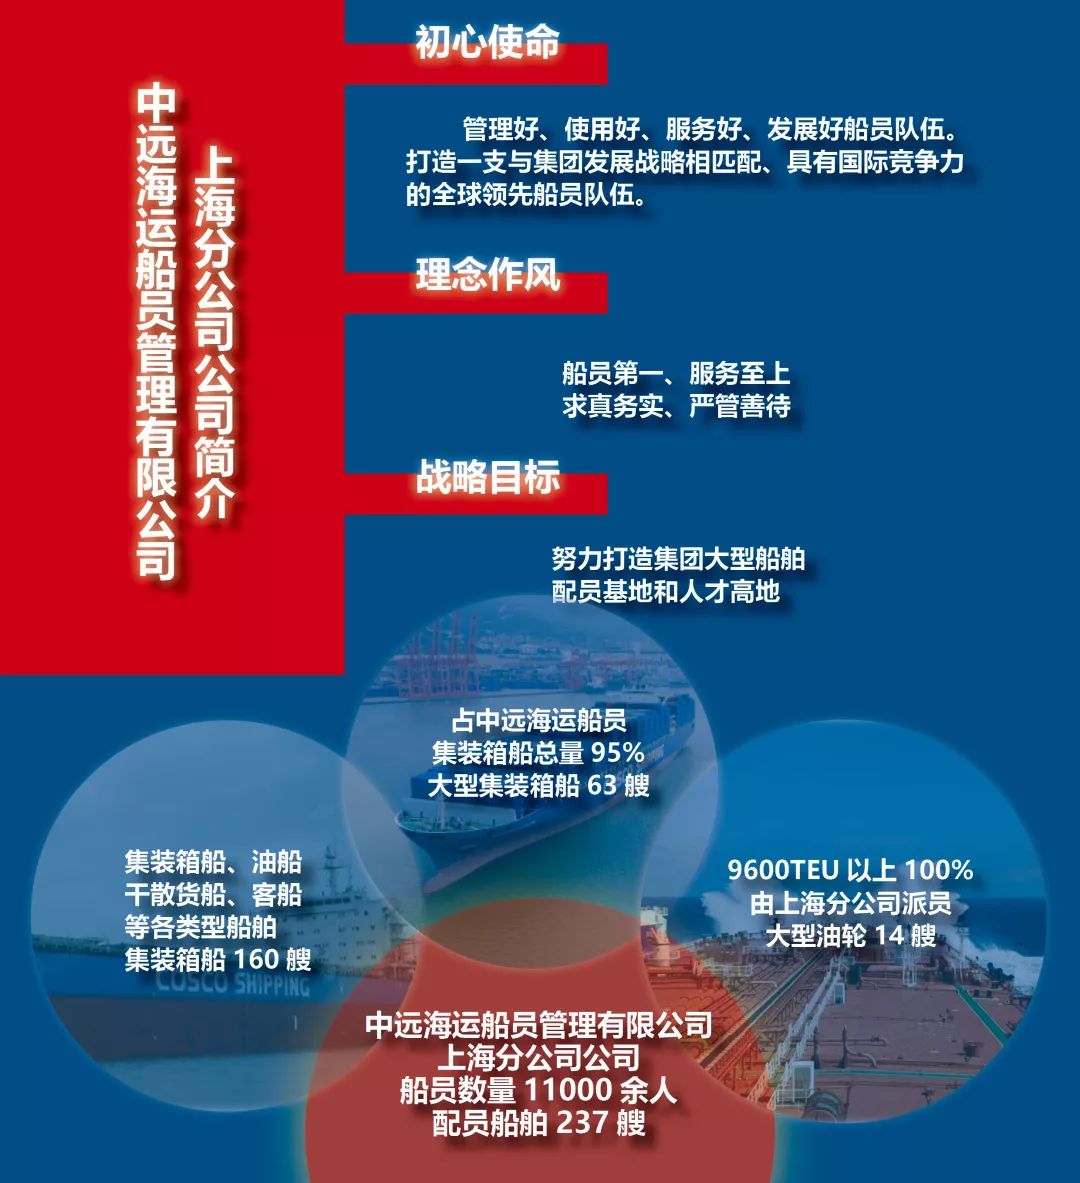 招聘 | 中远海运船员管理有限公司上海分